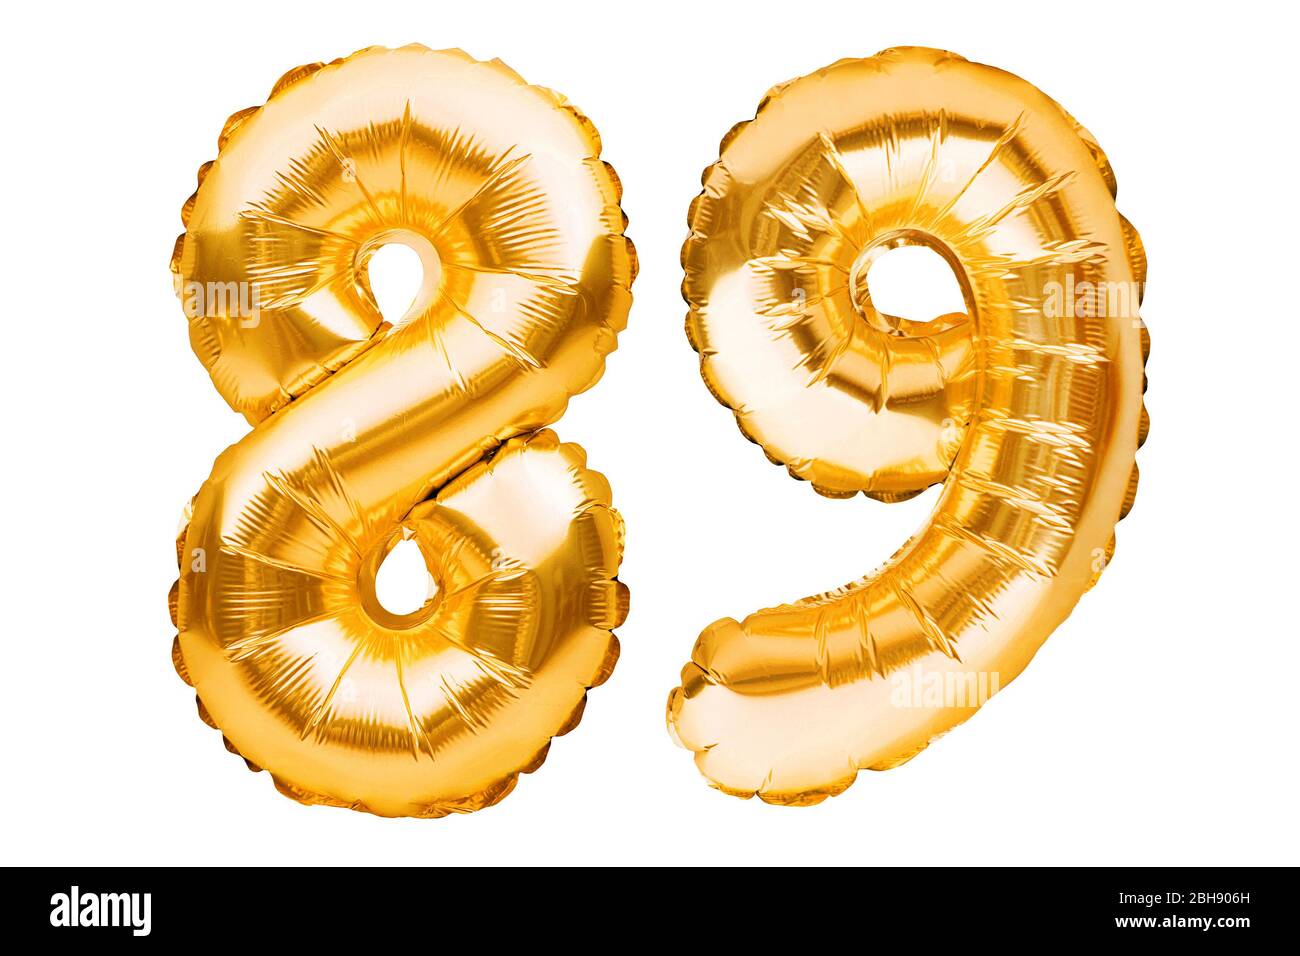 Boum 10 Septembre 2021. Numero-89-quatre-vingt-neuf-en-ballons-gonflables-dores-isoles-sur-blanc-ballons-d-helium-numeros-de-feuilles-d-or-decoration-de-fete-signe-anniversaire-pour-2bh906h